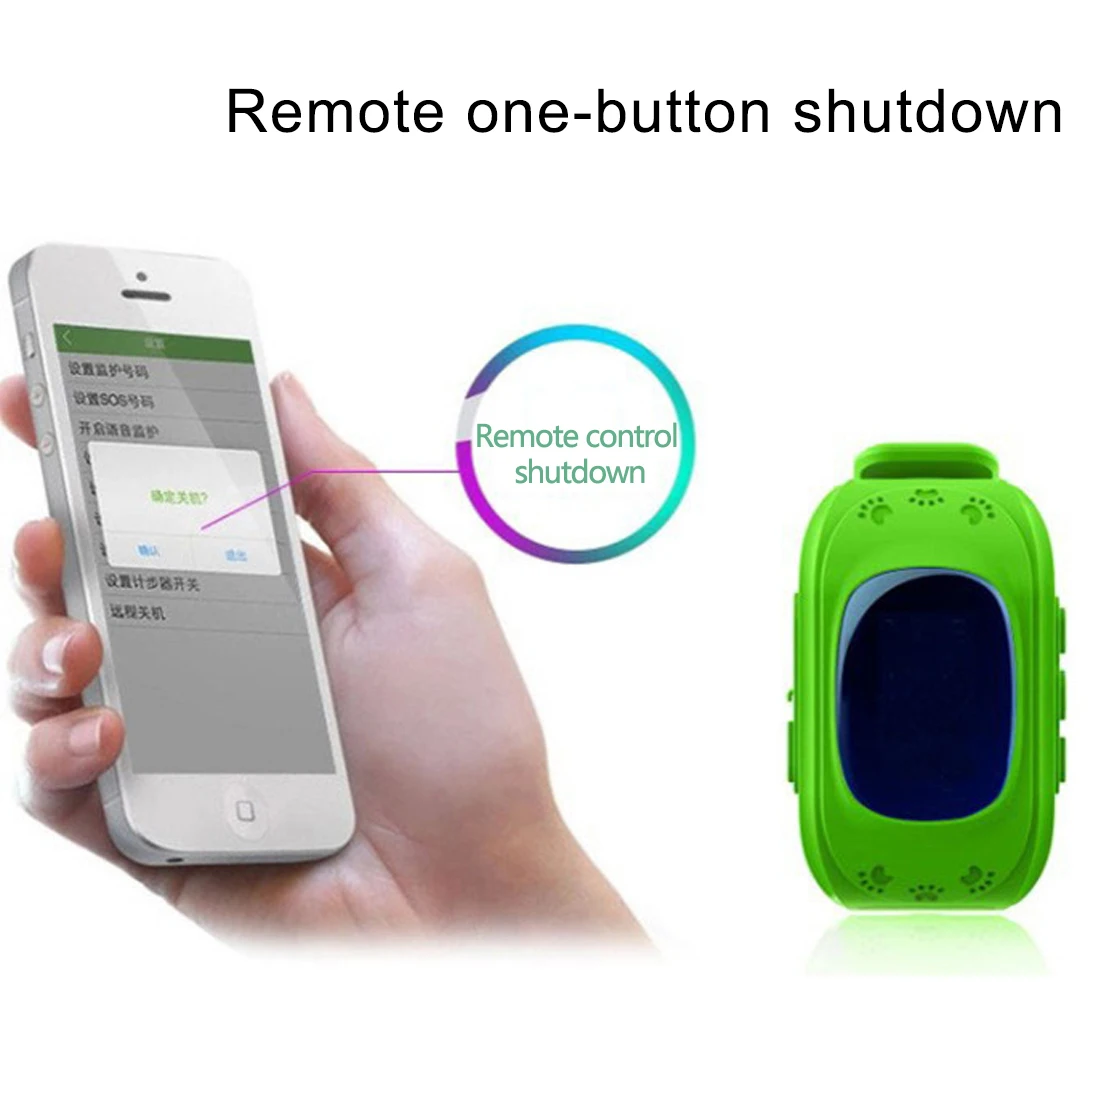 Высокое качество Q50 анти потерянный OLED ребенок без gps трекер SOS умный мониторинг позиционирования телефон детские часы для IOS Android